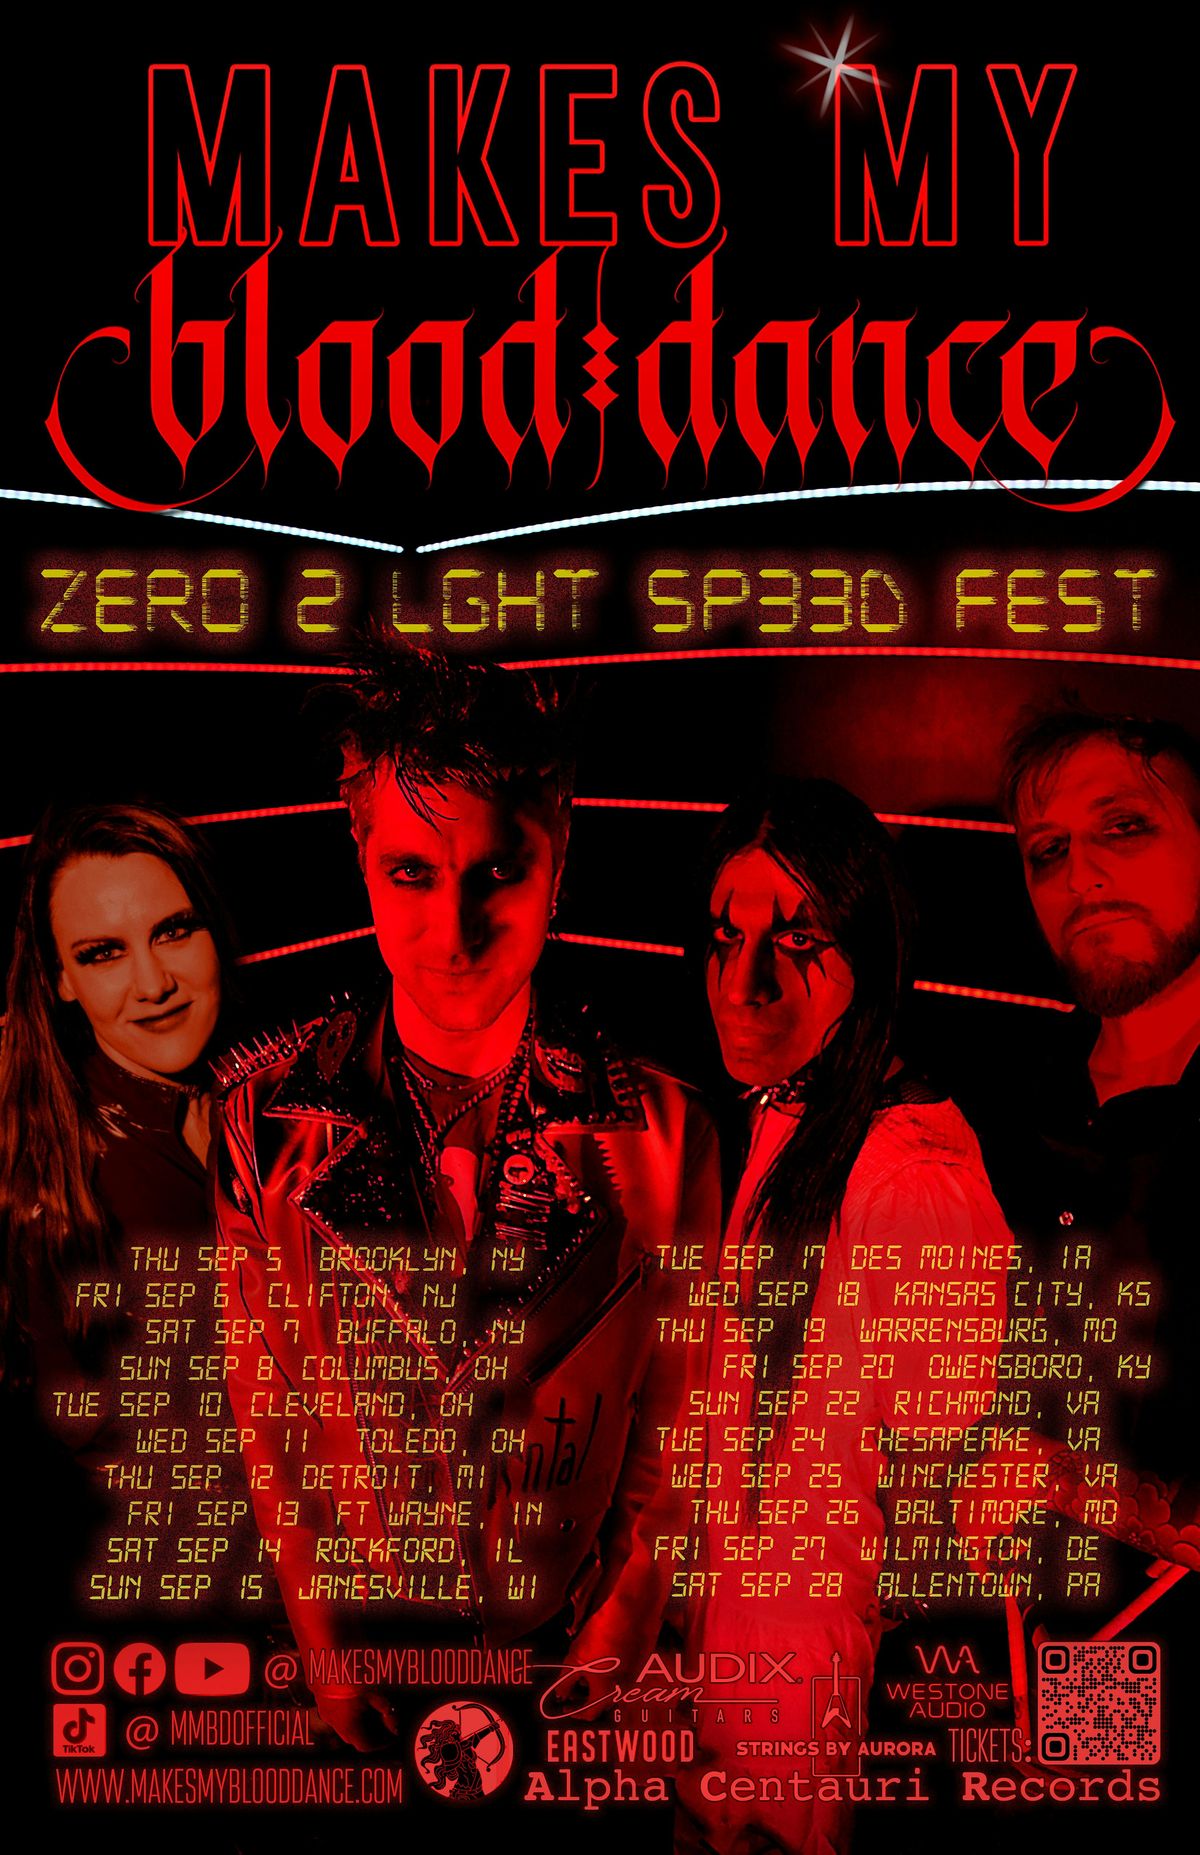 Sep 6 - QXT's, Newark, NJ - Makes My Blood Dance ZER0 2 LGHT SP33D Fest